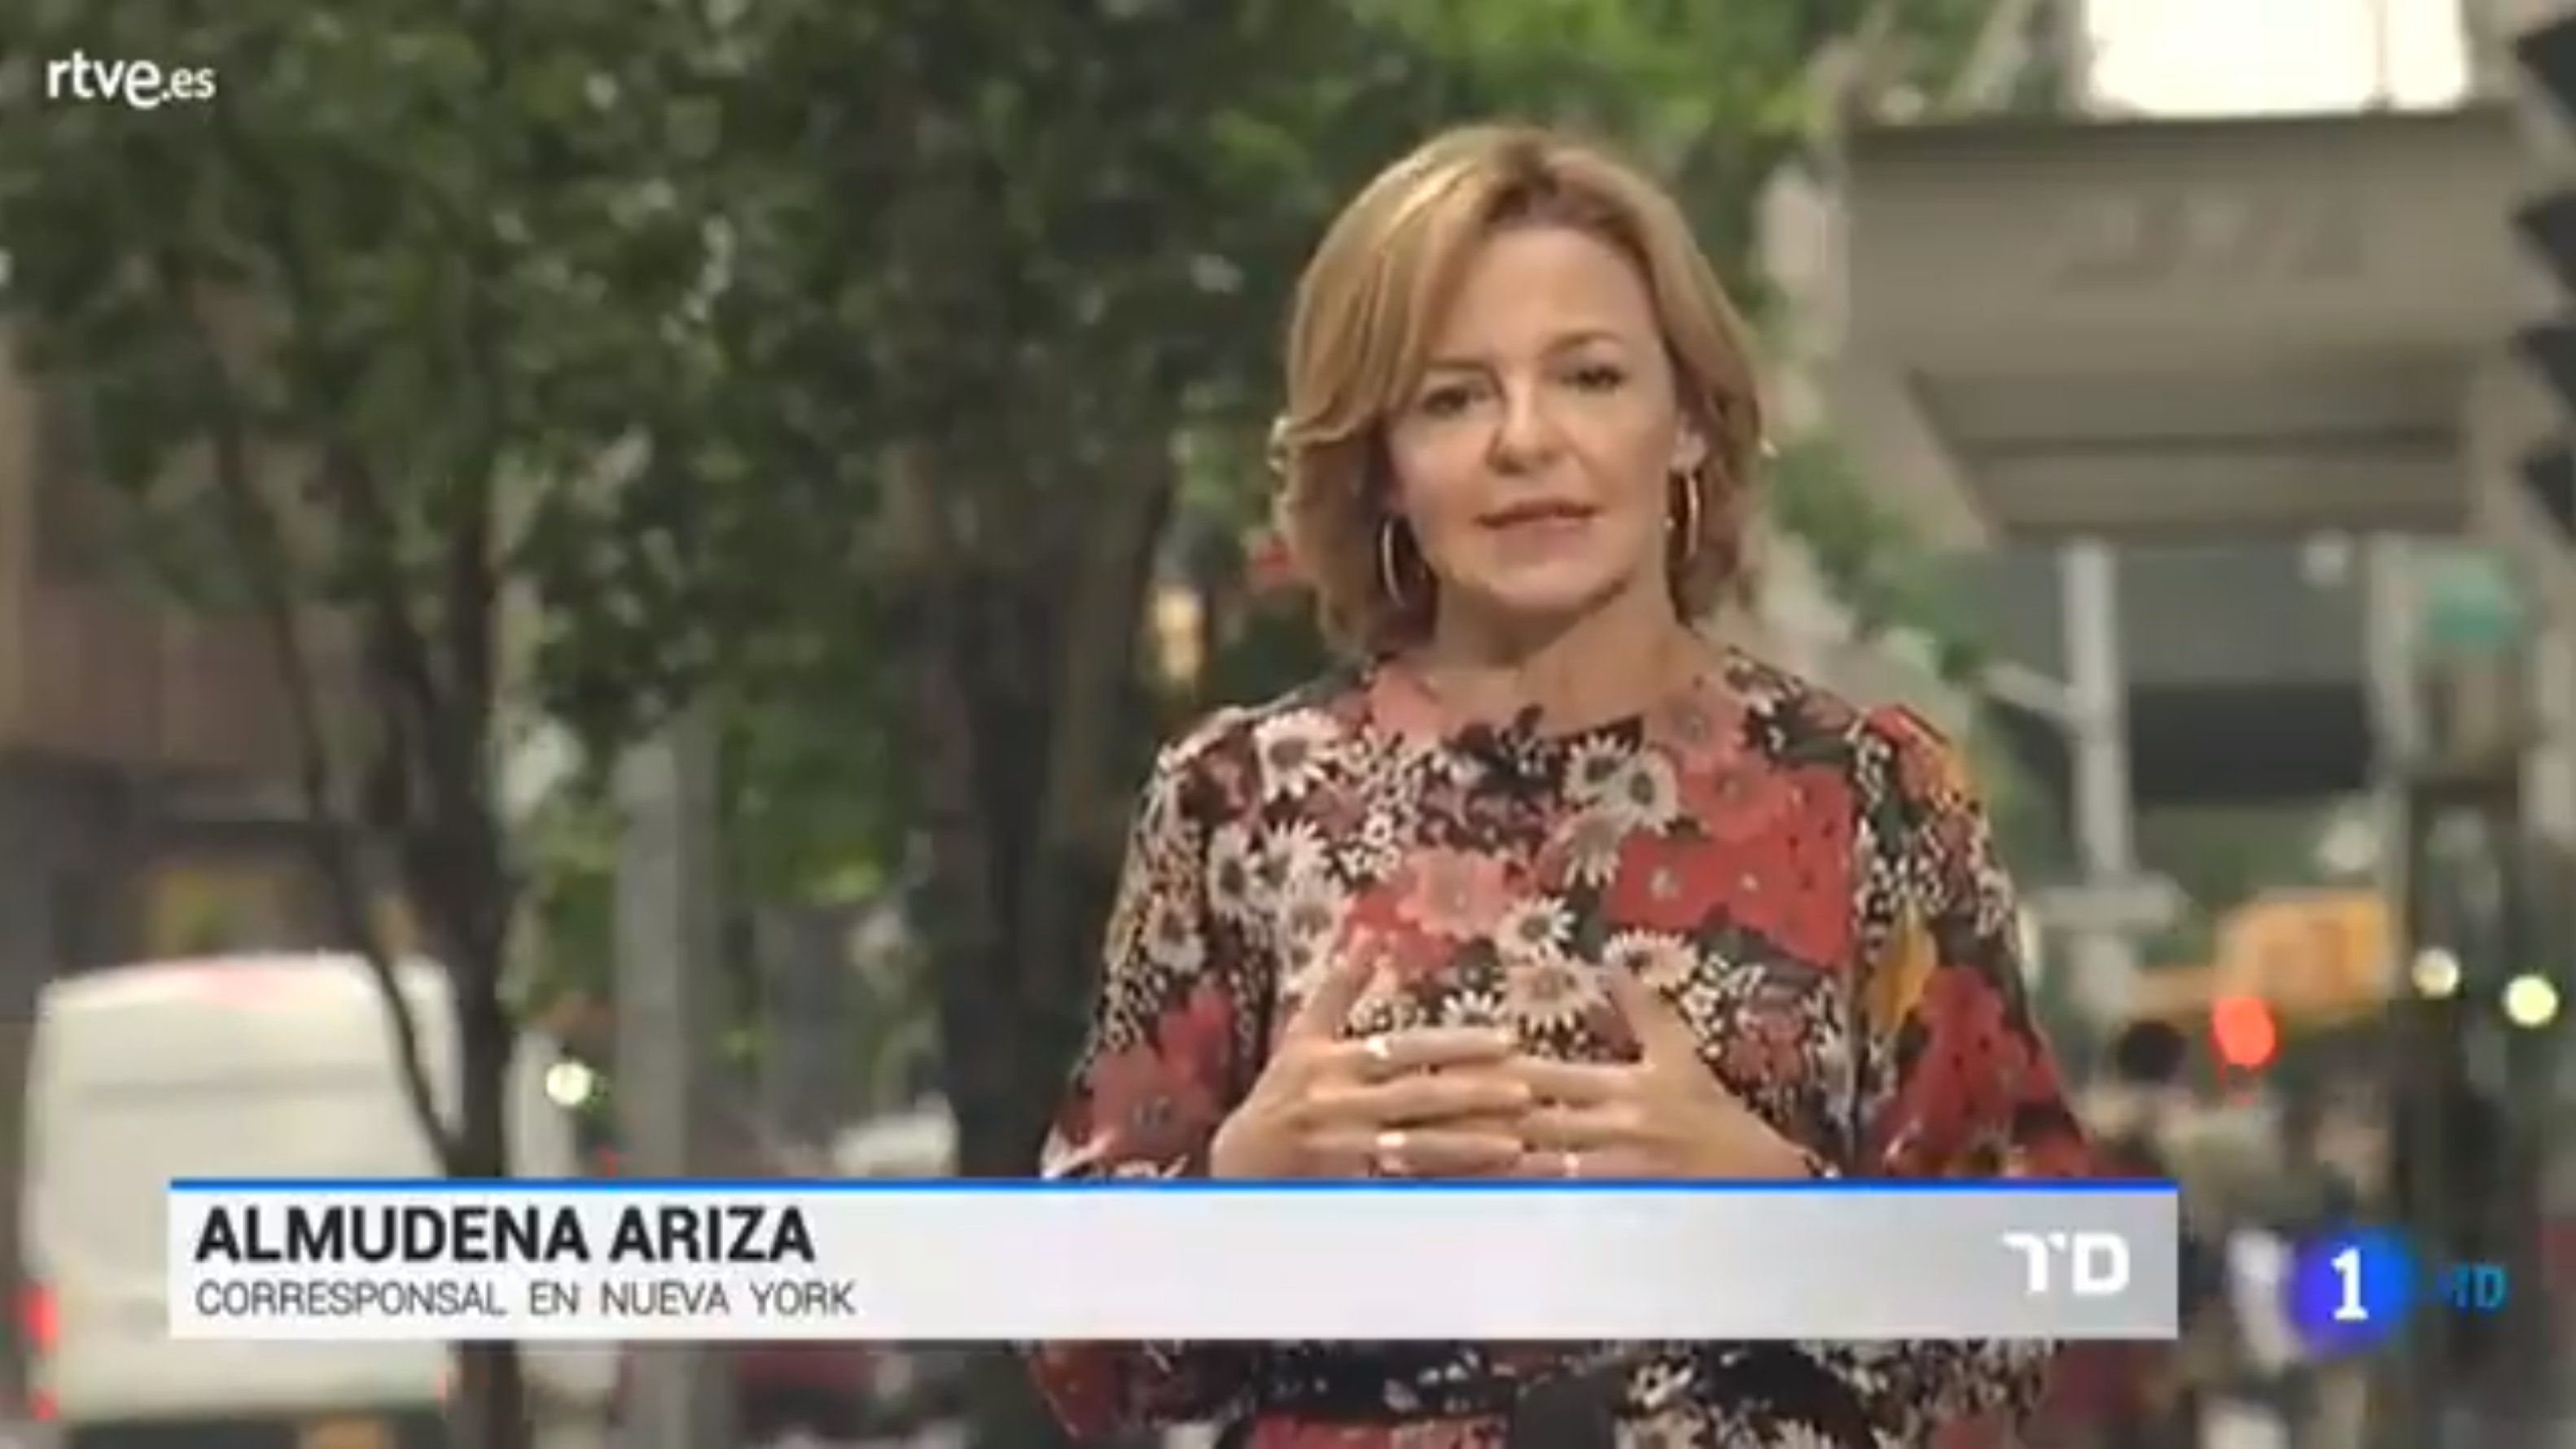 Almudena Ariza planta a Enric Hernández en RTVE por falta de apoyo: "No he sabido ilusionar"